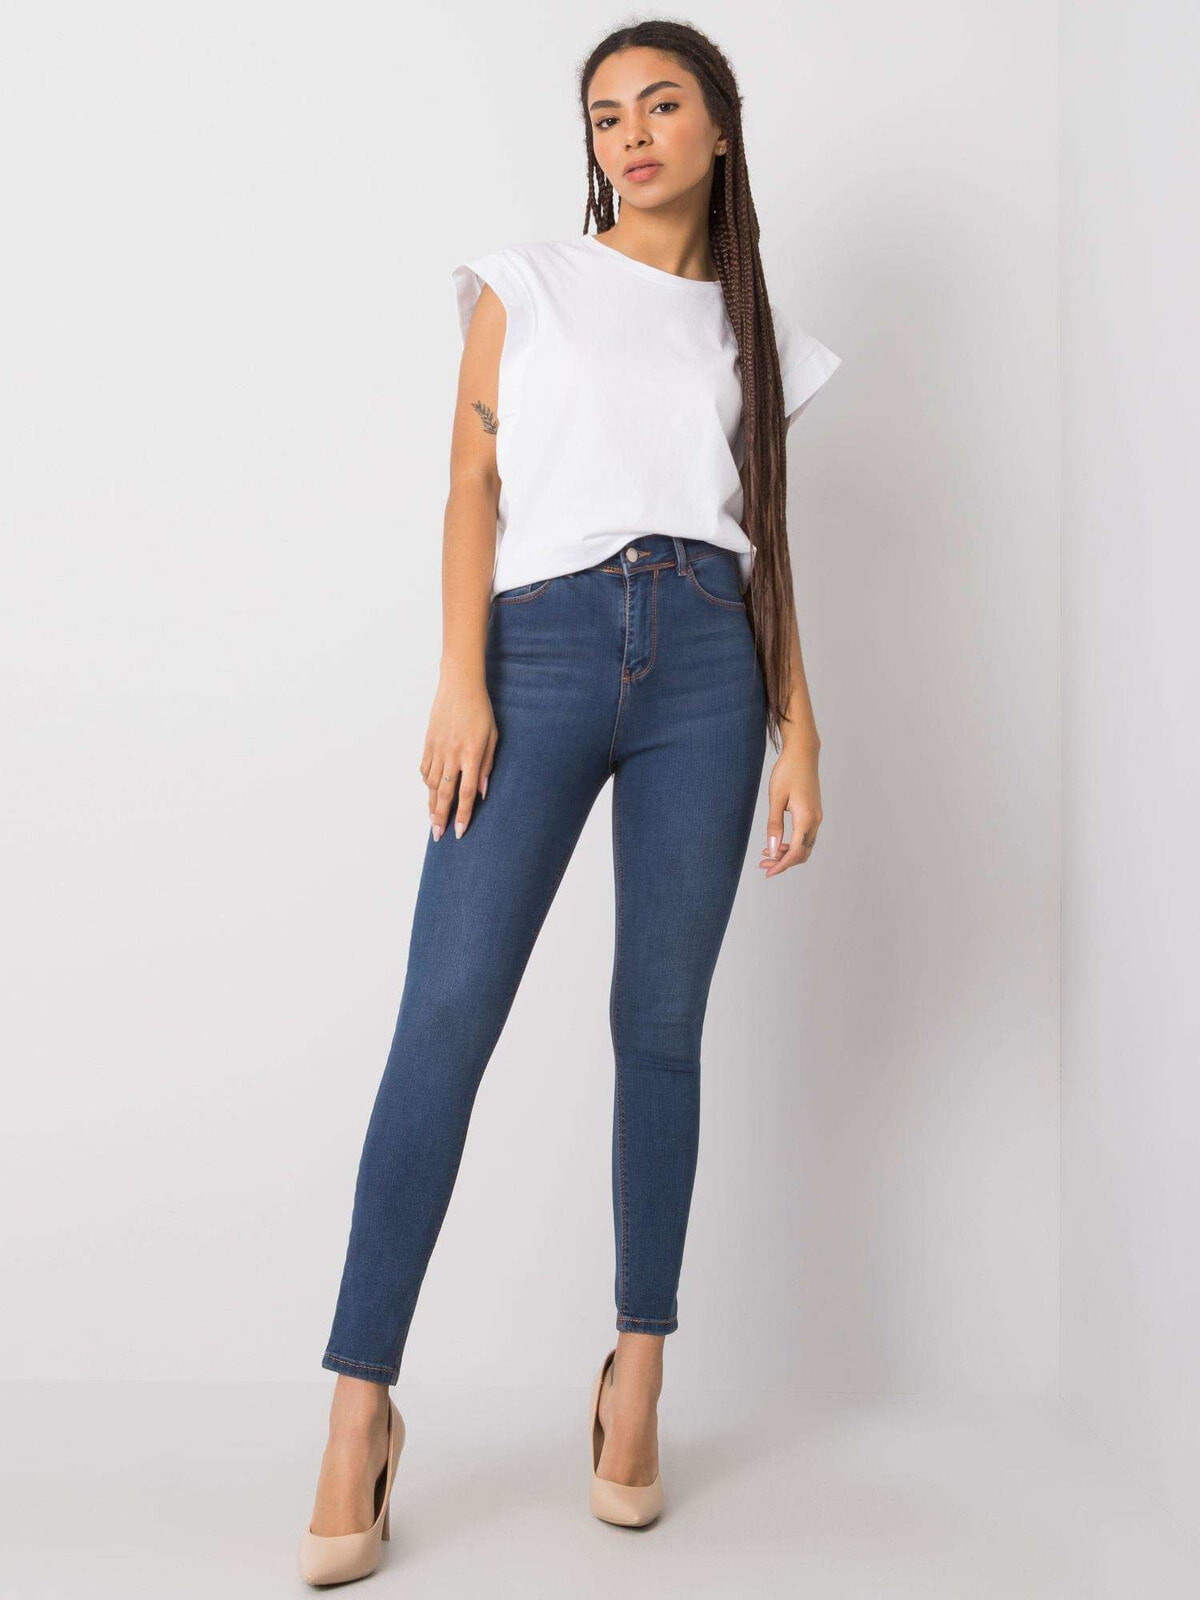 Женские джинсы    скинни со средней посадкой синие Factory Price